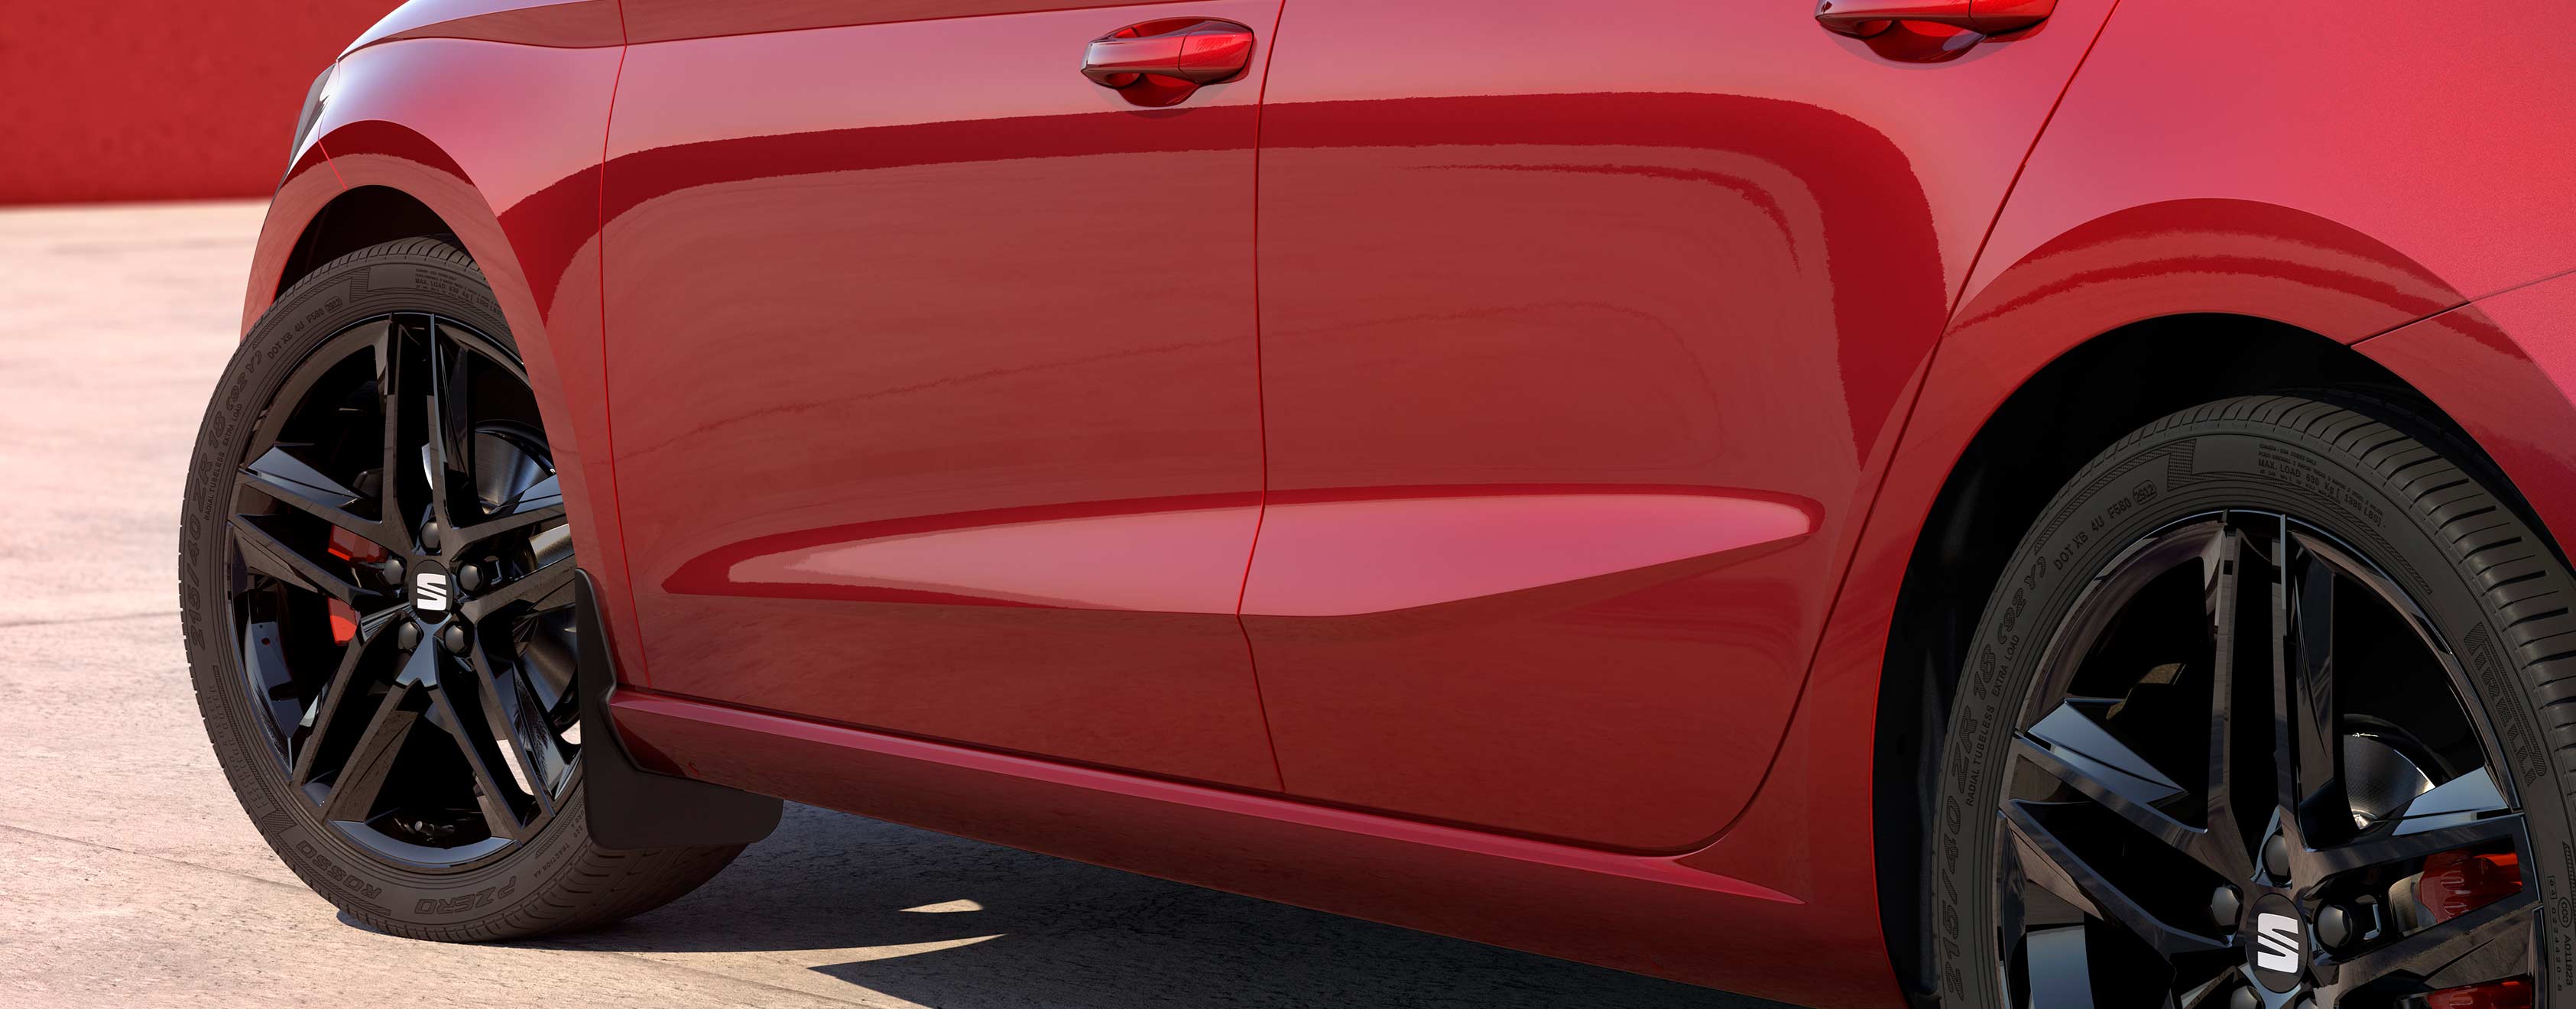 SEAT Ibiza Desire Red mit Schmutzfängern vorne und hinten